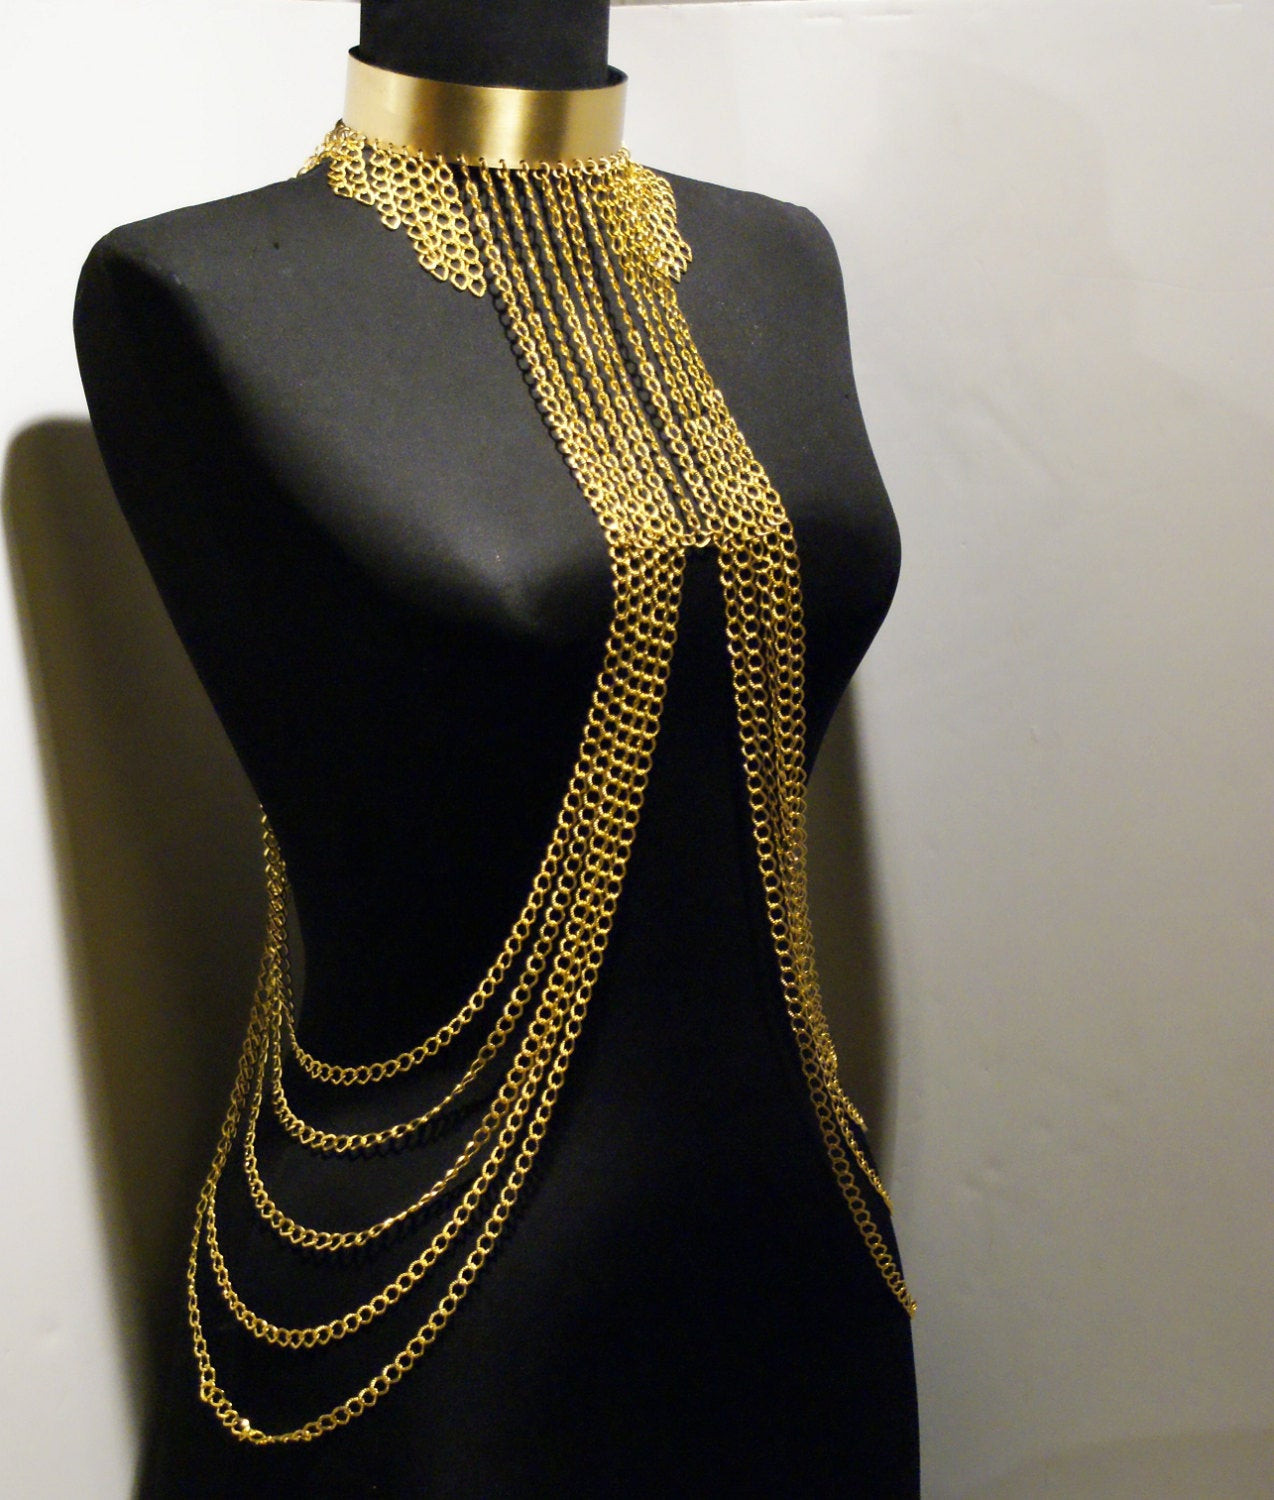 Body Necklace Jewelry
 gold body chain body jewelry chain by BeyhanAkman on Etsy